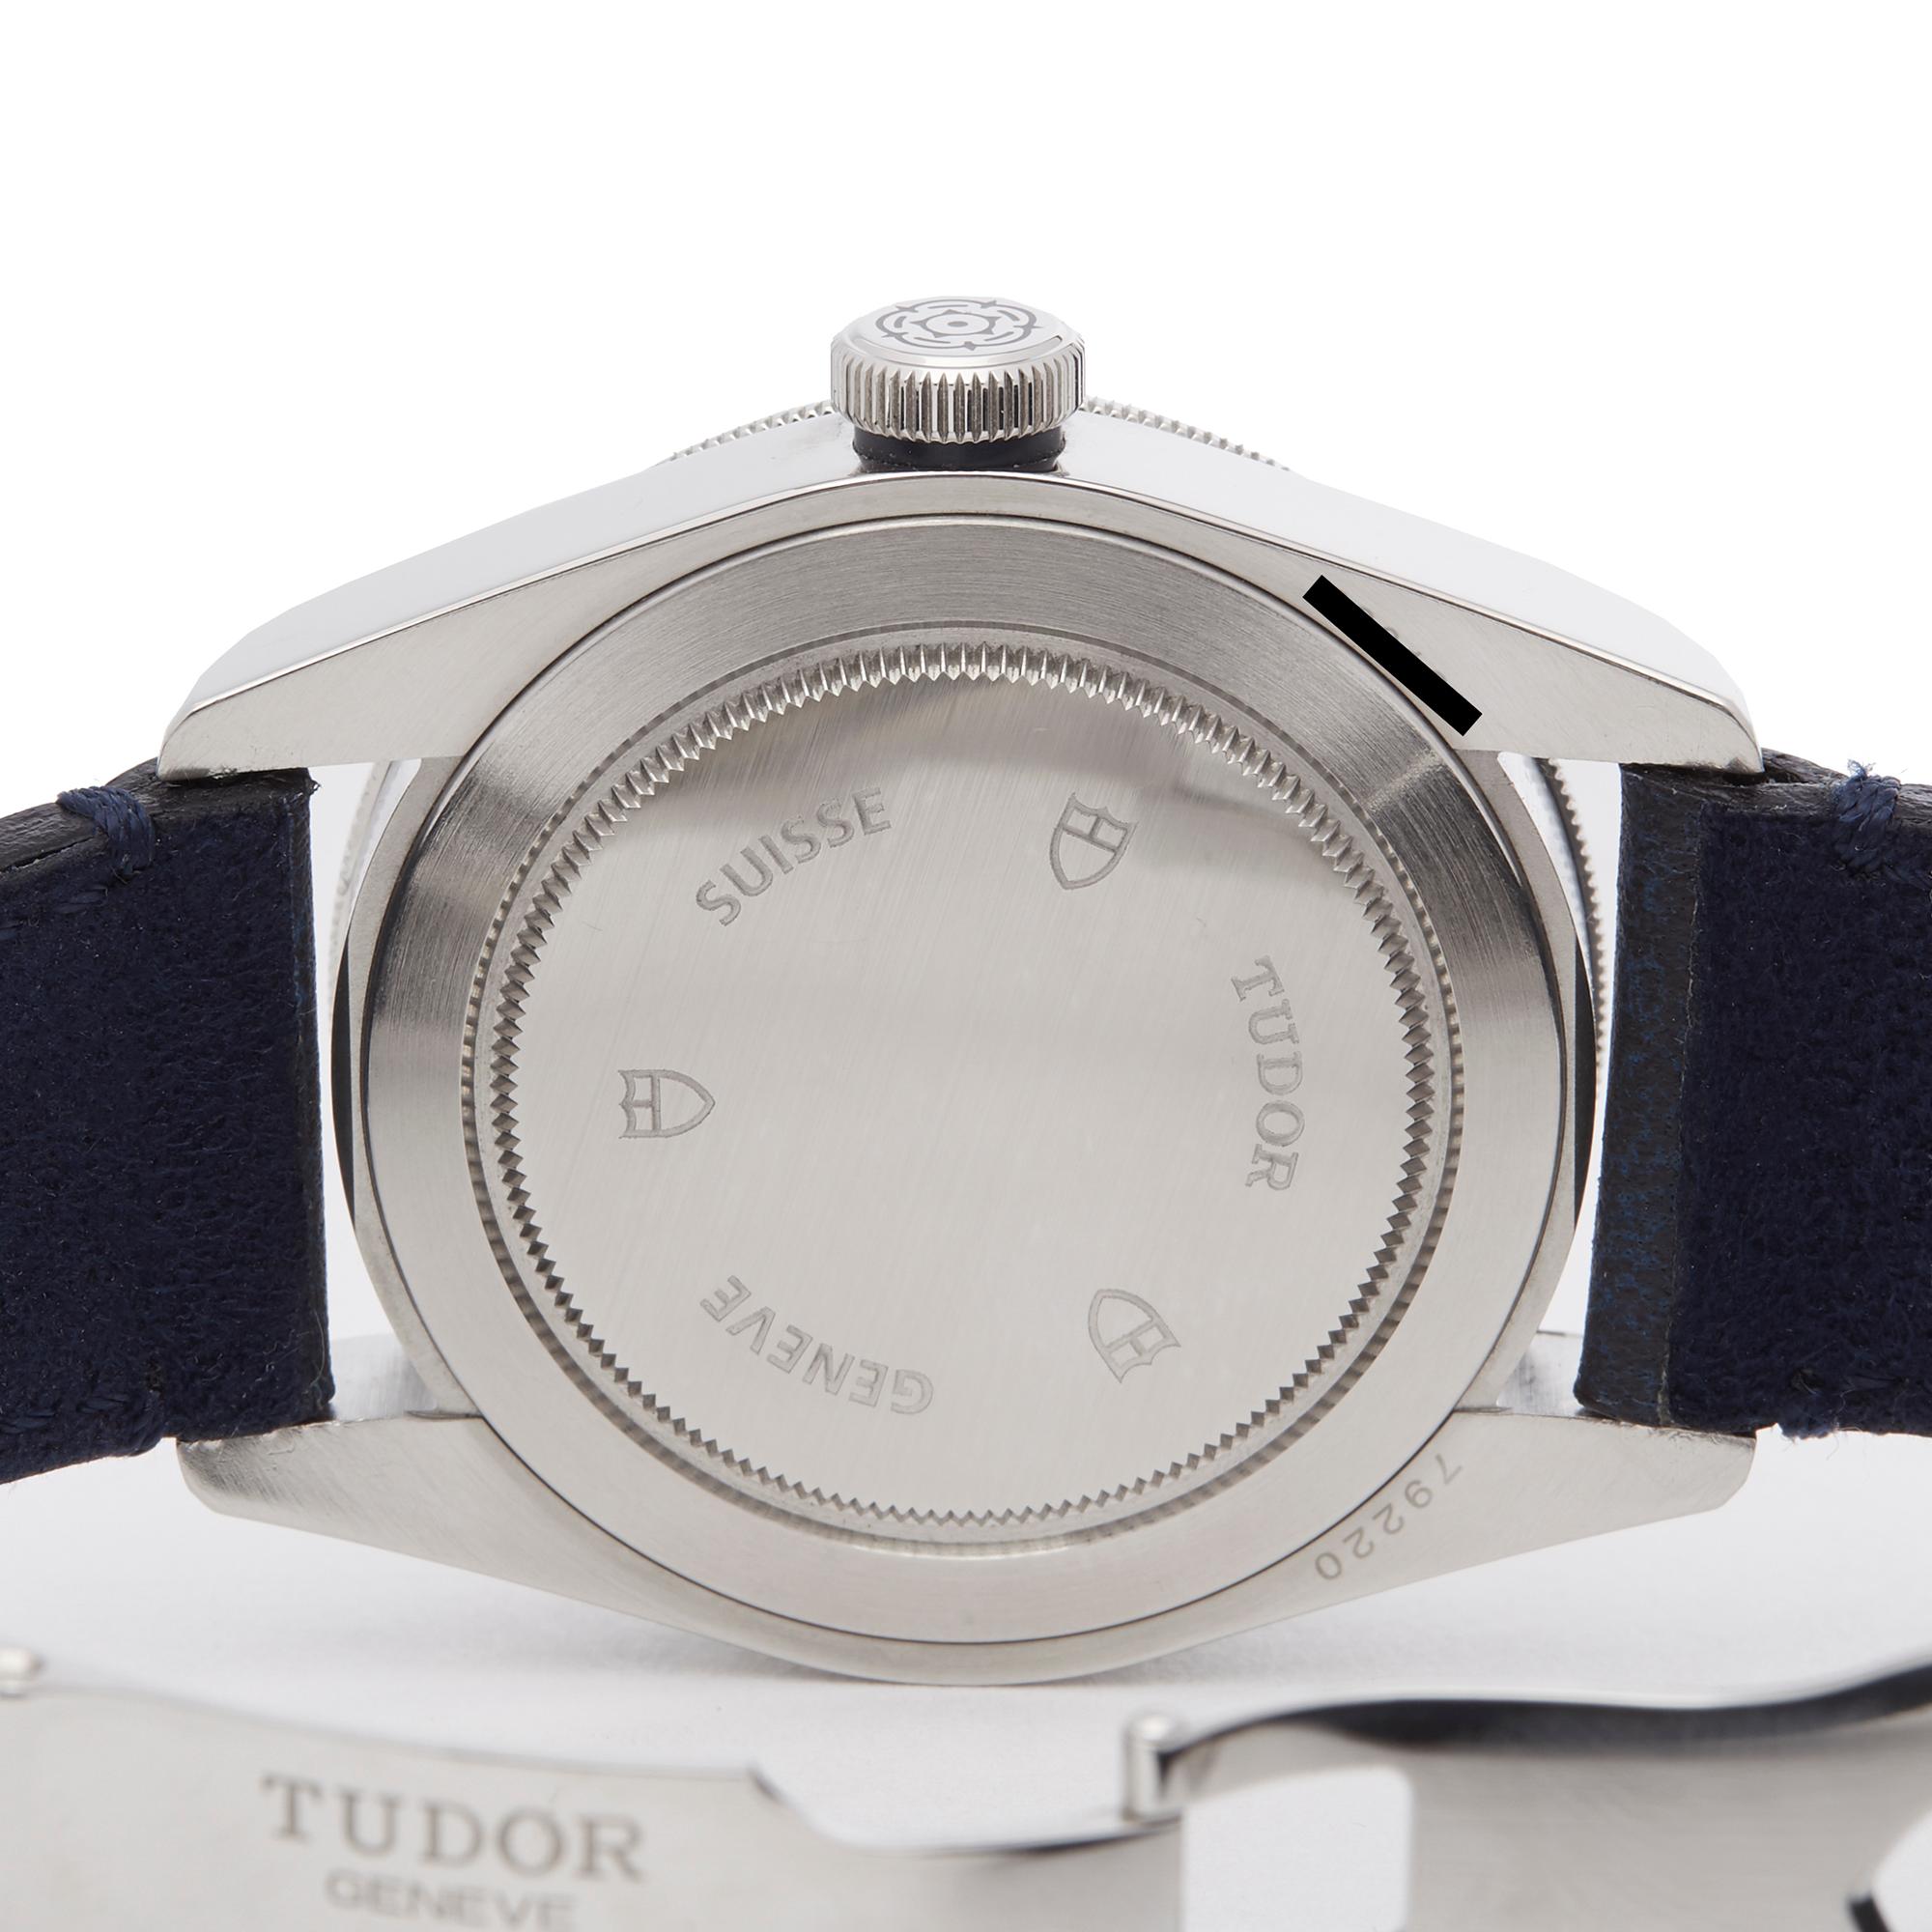 Tudor Black Bay Stainless Steel 79220B Wristwatch 2